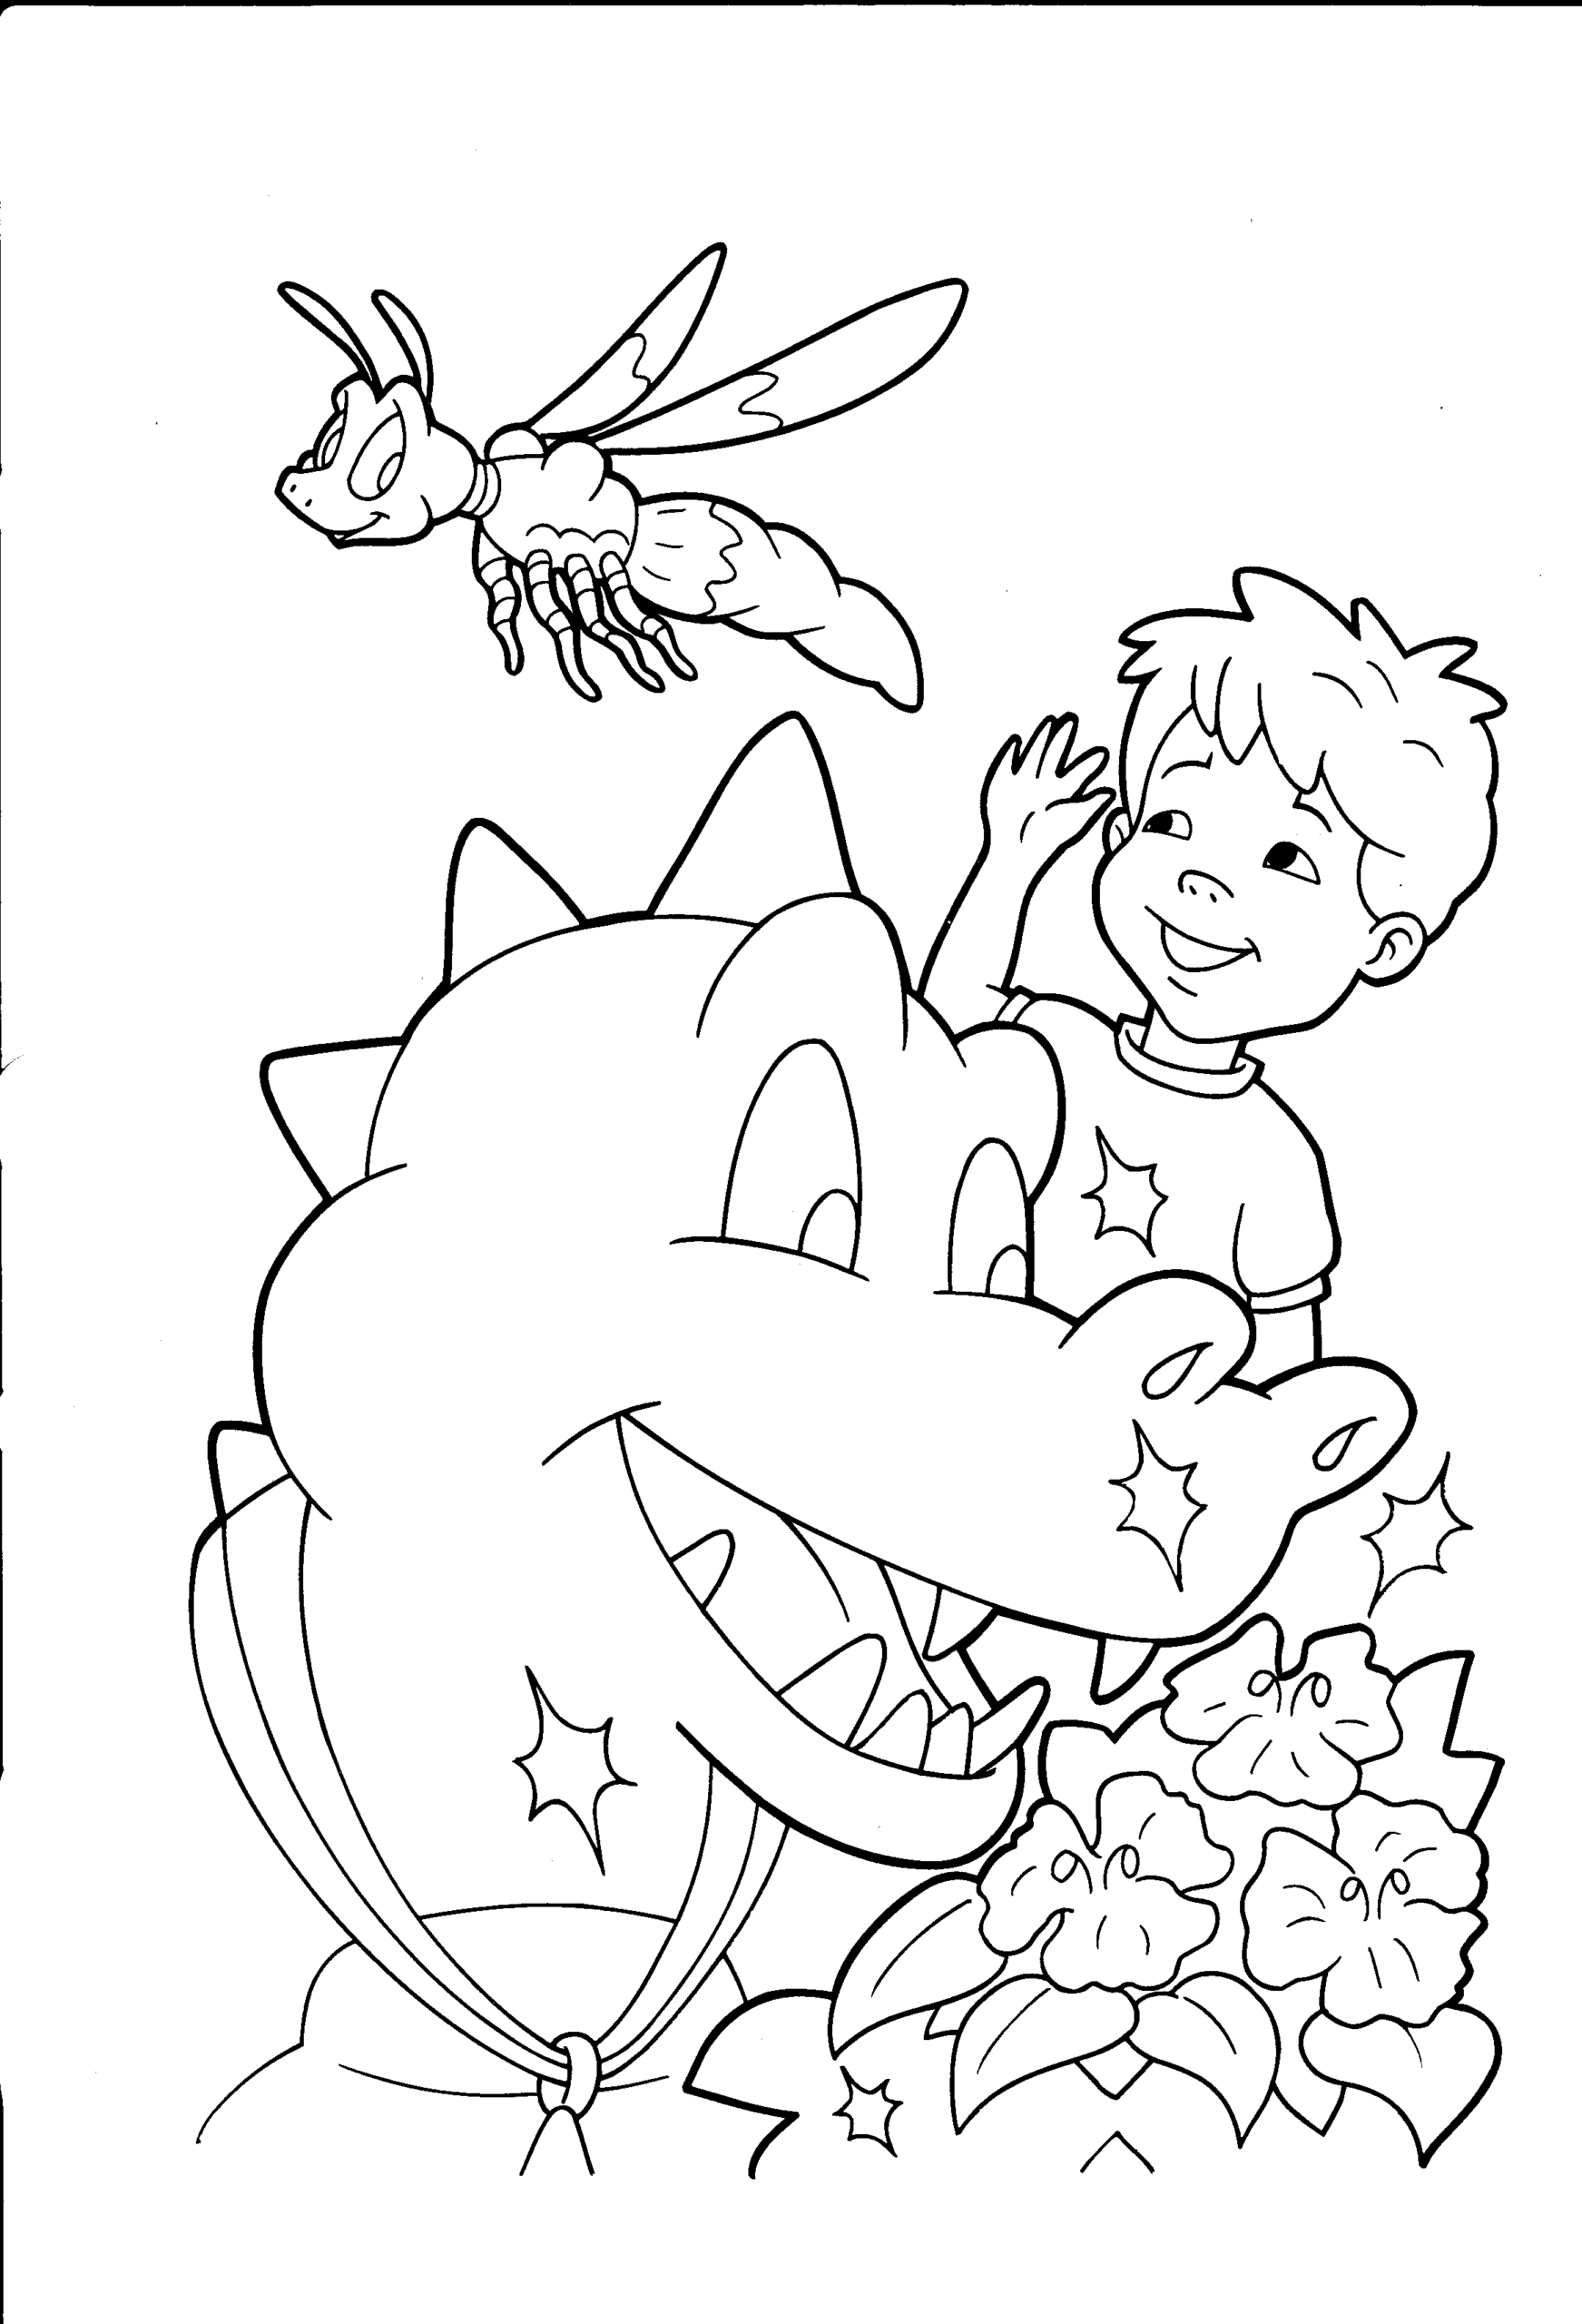 Kolorowanka smok zachwyca się kwiatkiem obok chłopca, który macha lecącemu owadowi